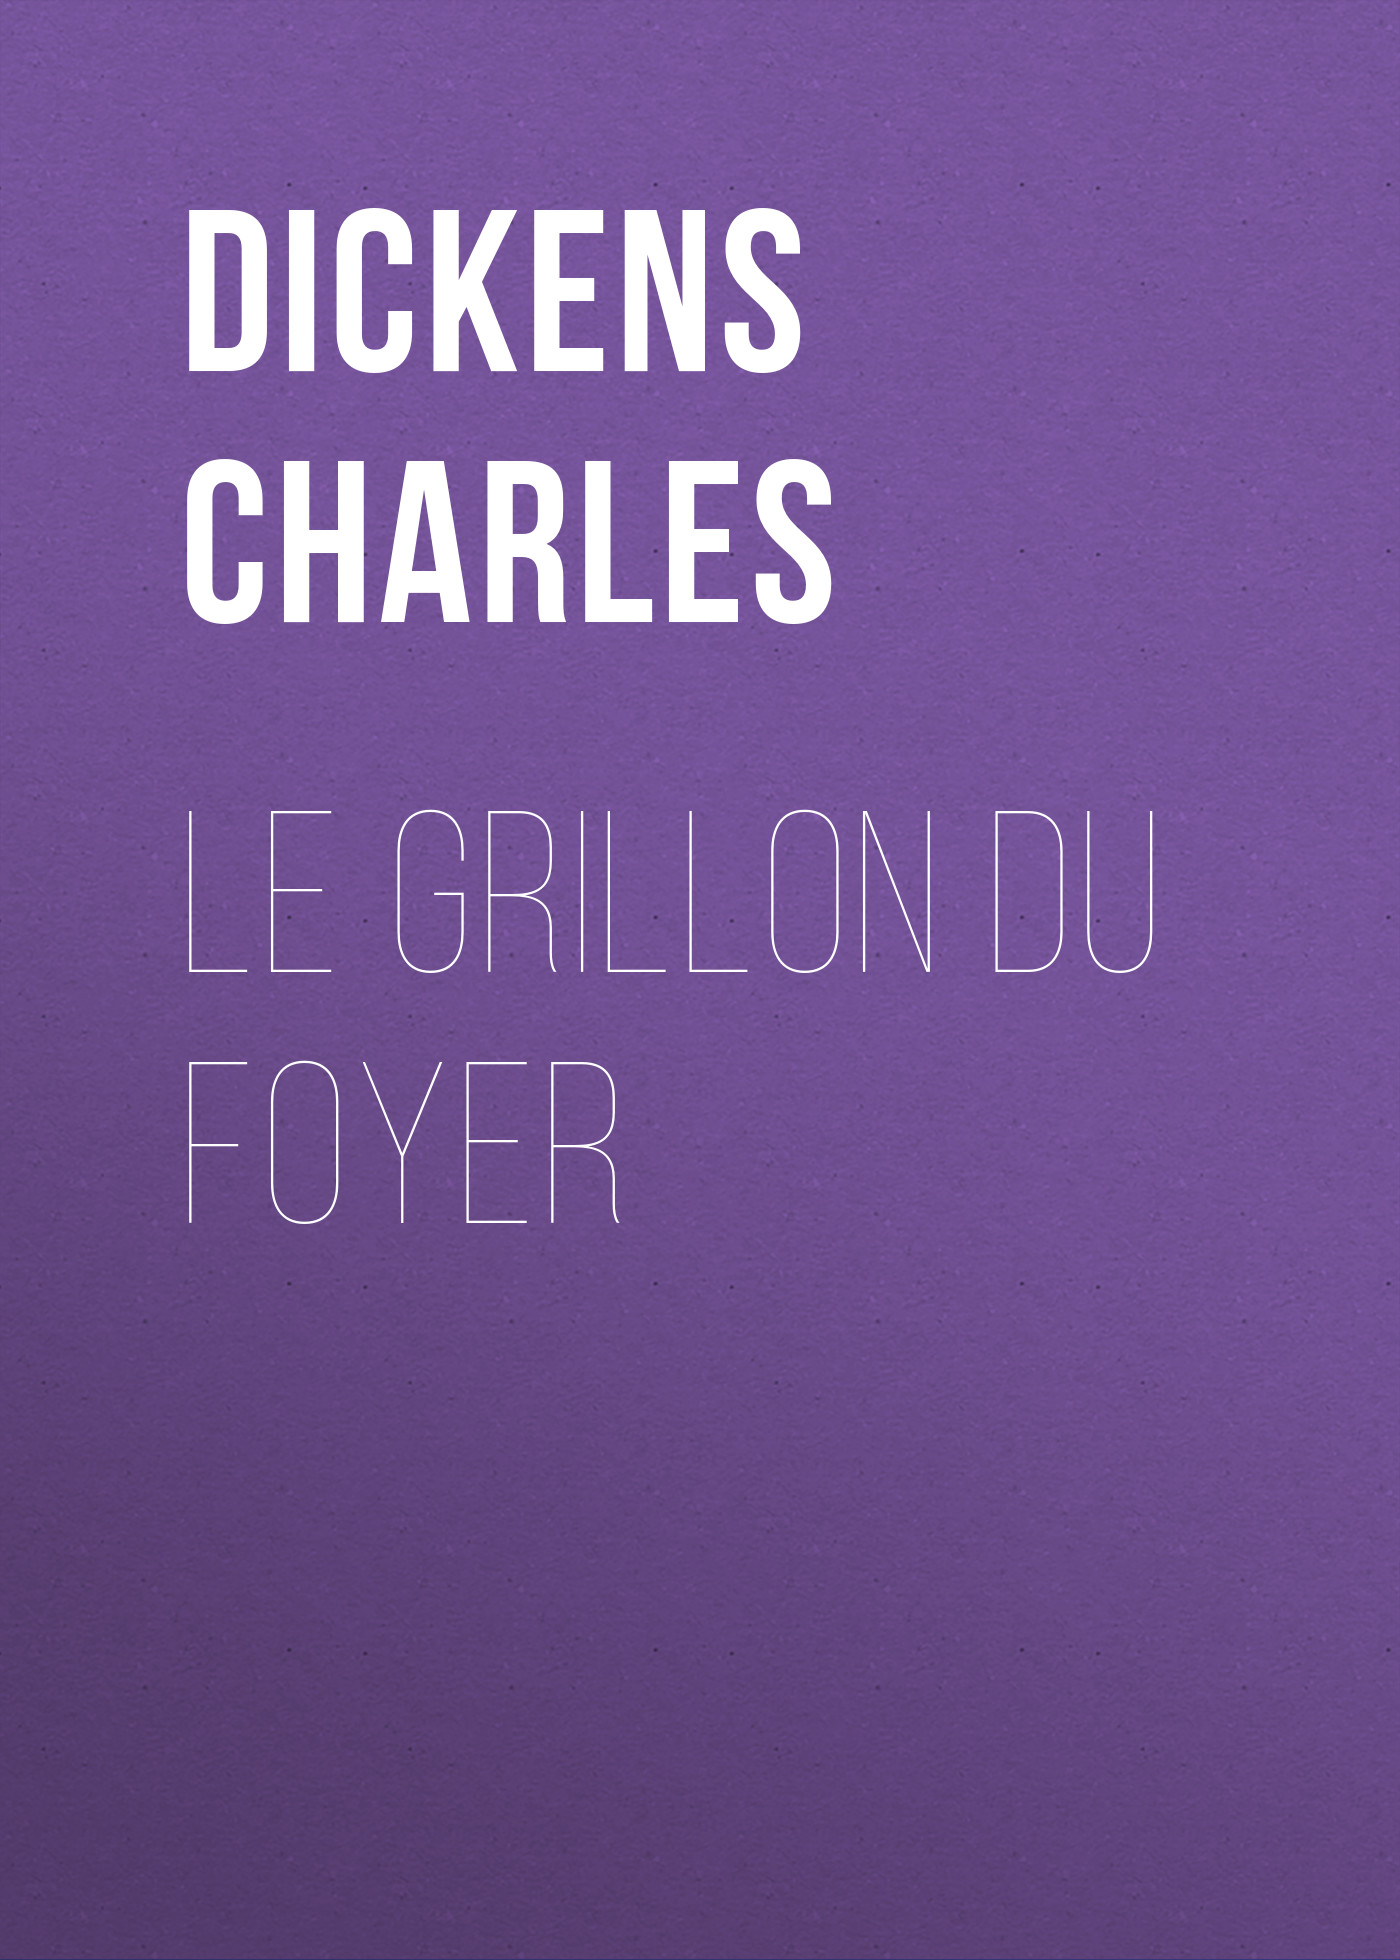 Книга Le grillon du foyer из серии , созданная Charles Dickens, может относится к жанру Зарубежная старинная литература, Зарубежная классика. Стоимость электронной книги Le grillon du foyer с идентификатором 25092884 составляет 0 руб.